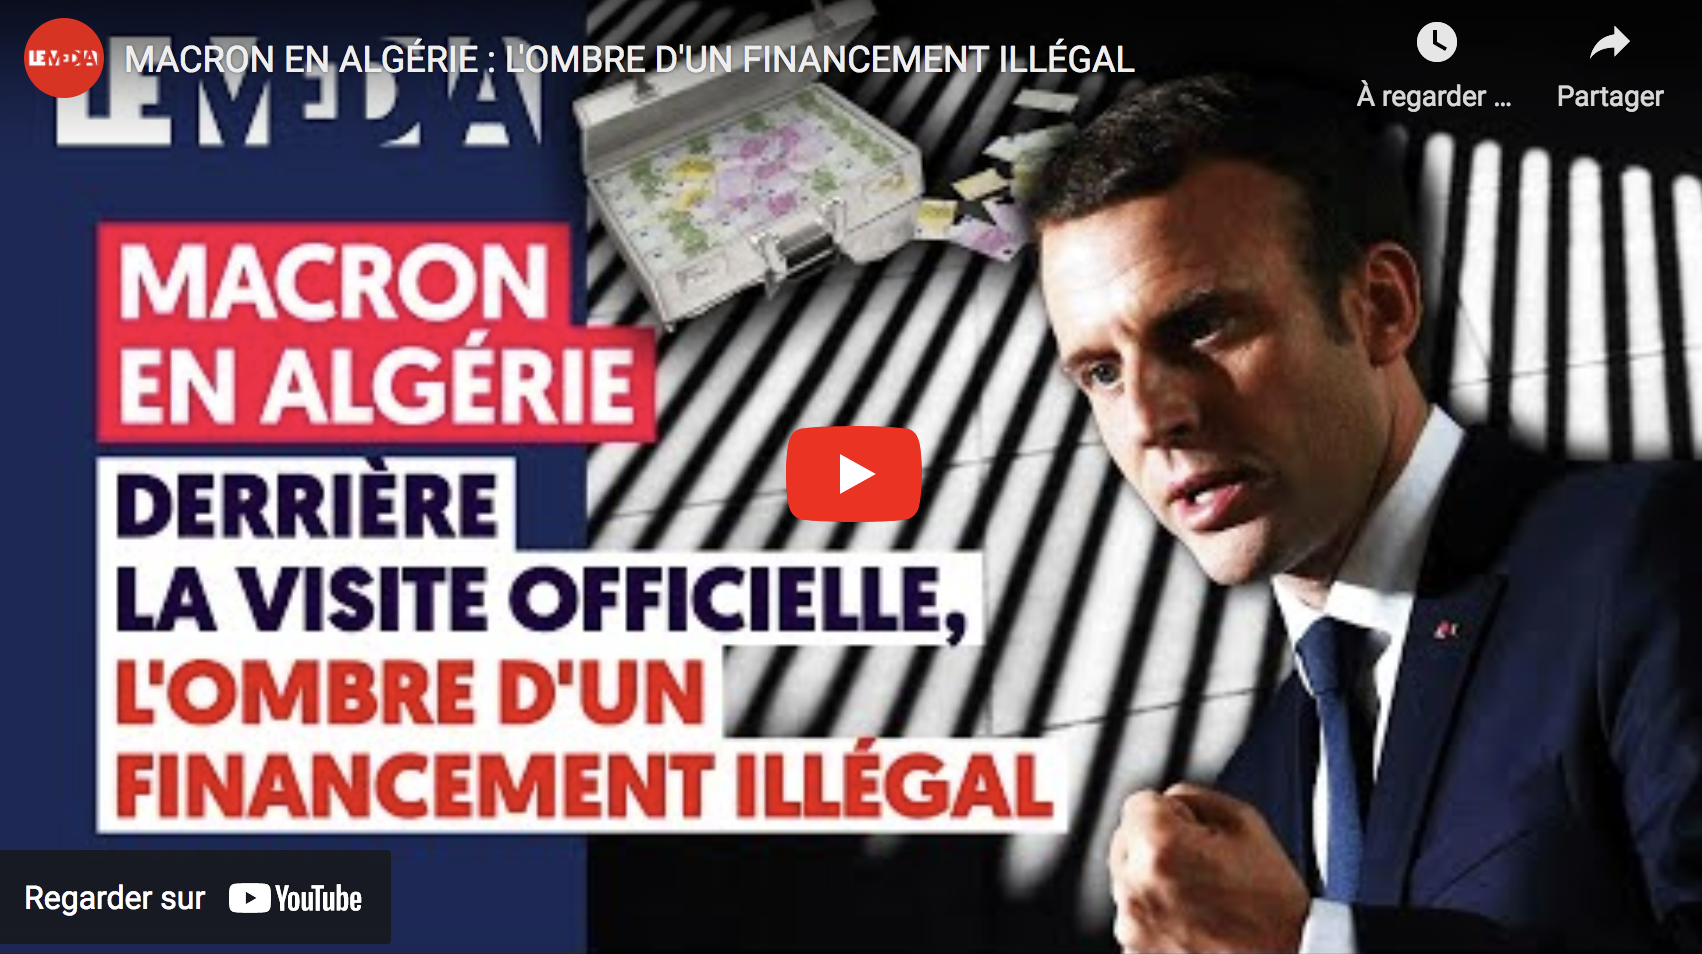 Emmanuel Macron en Algérie : L’ombre d’un financement illégal (VIDÉO)